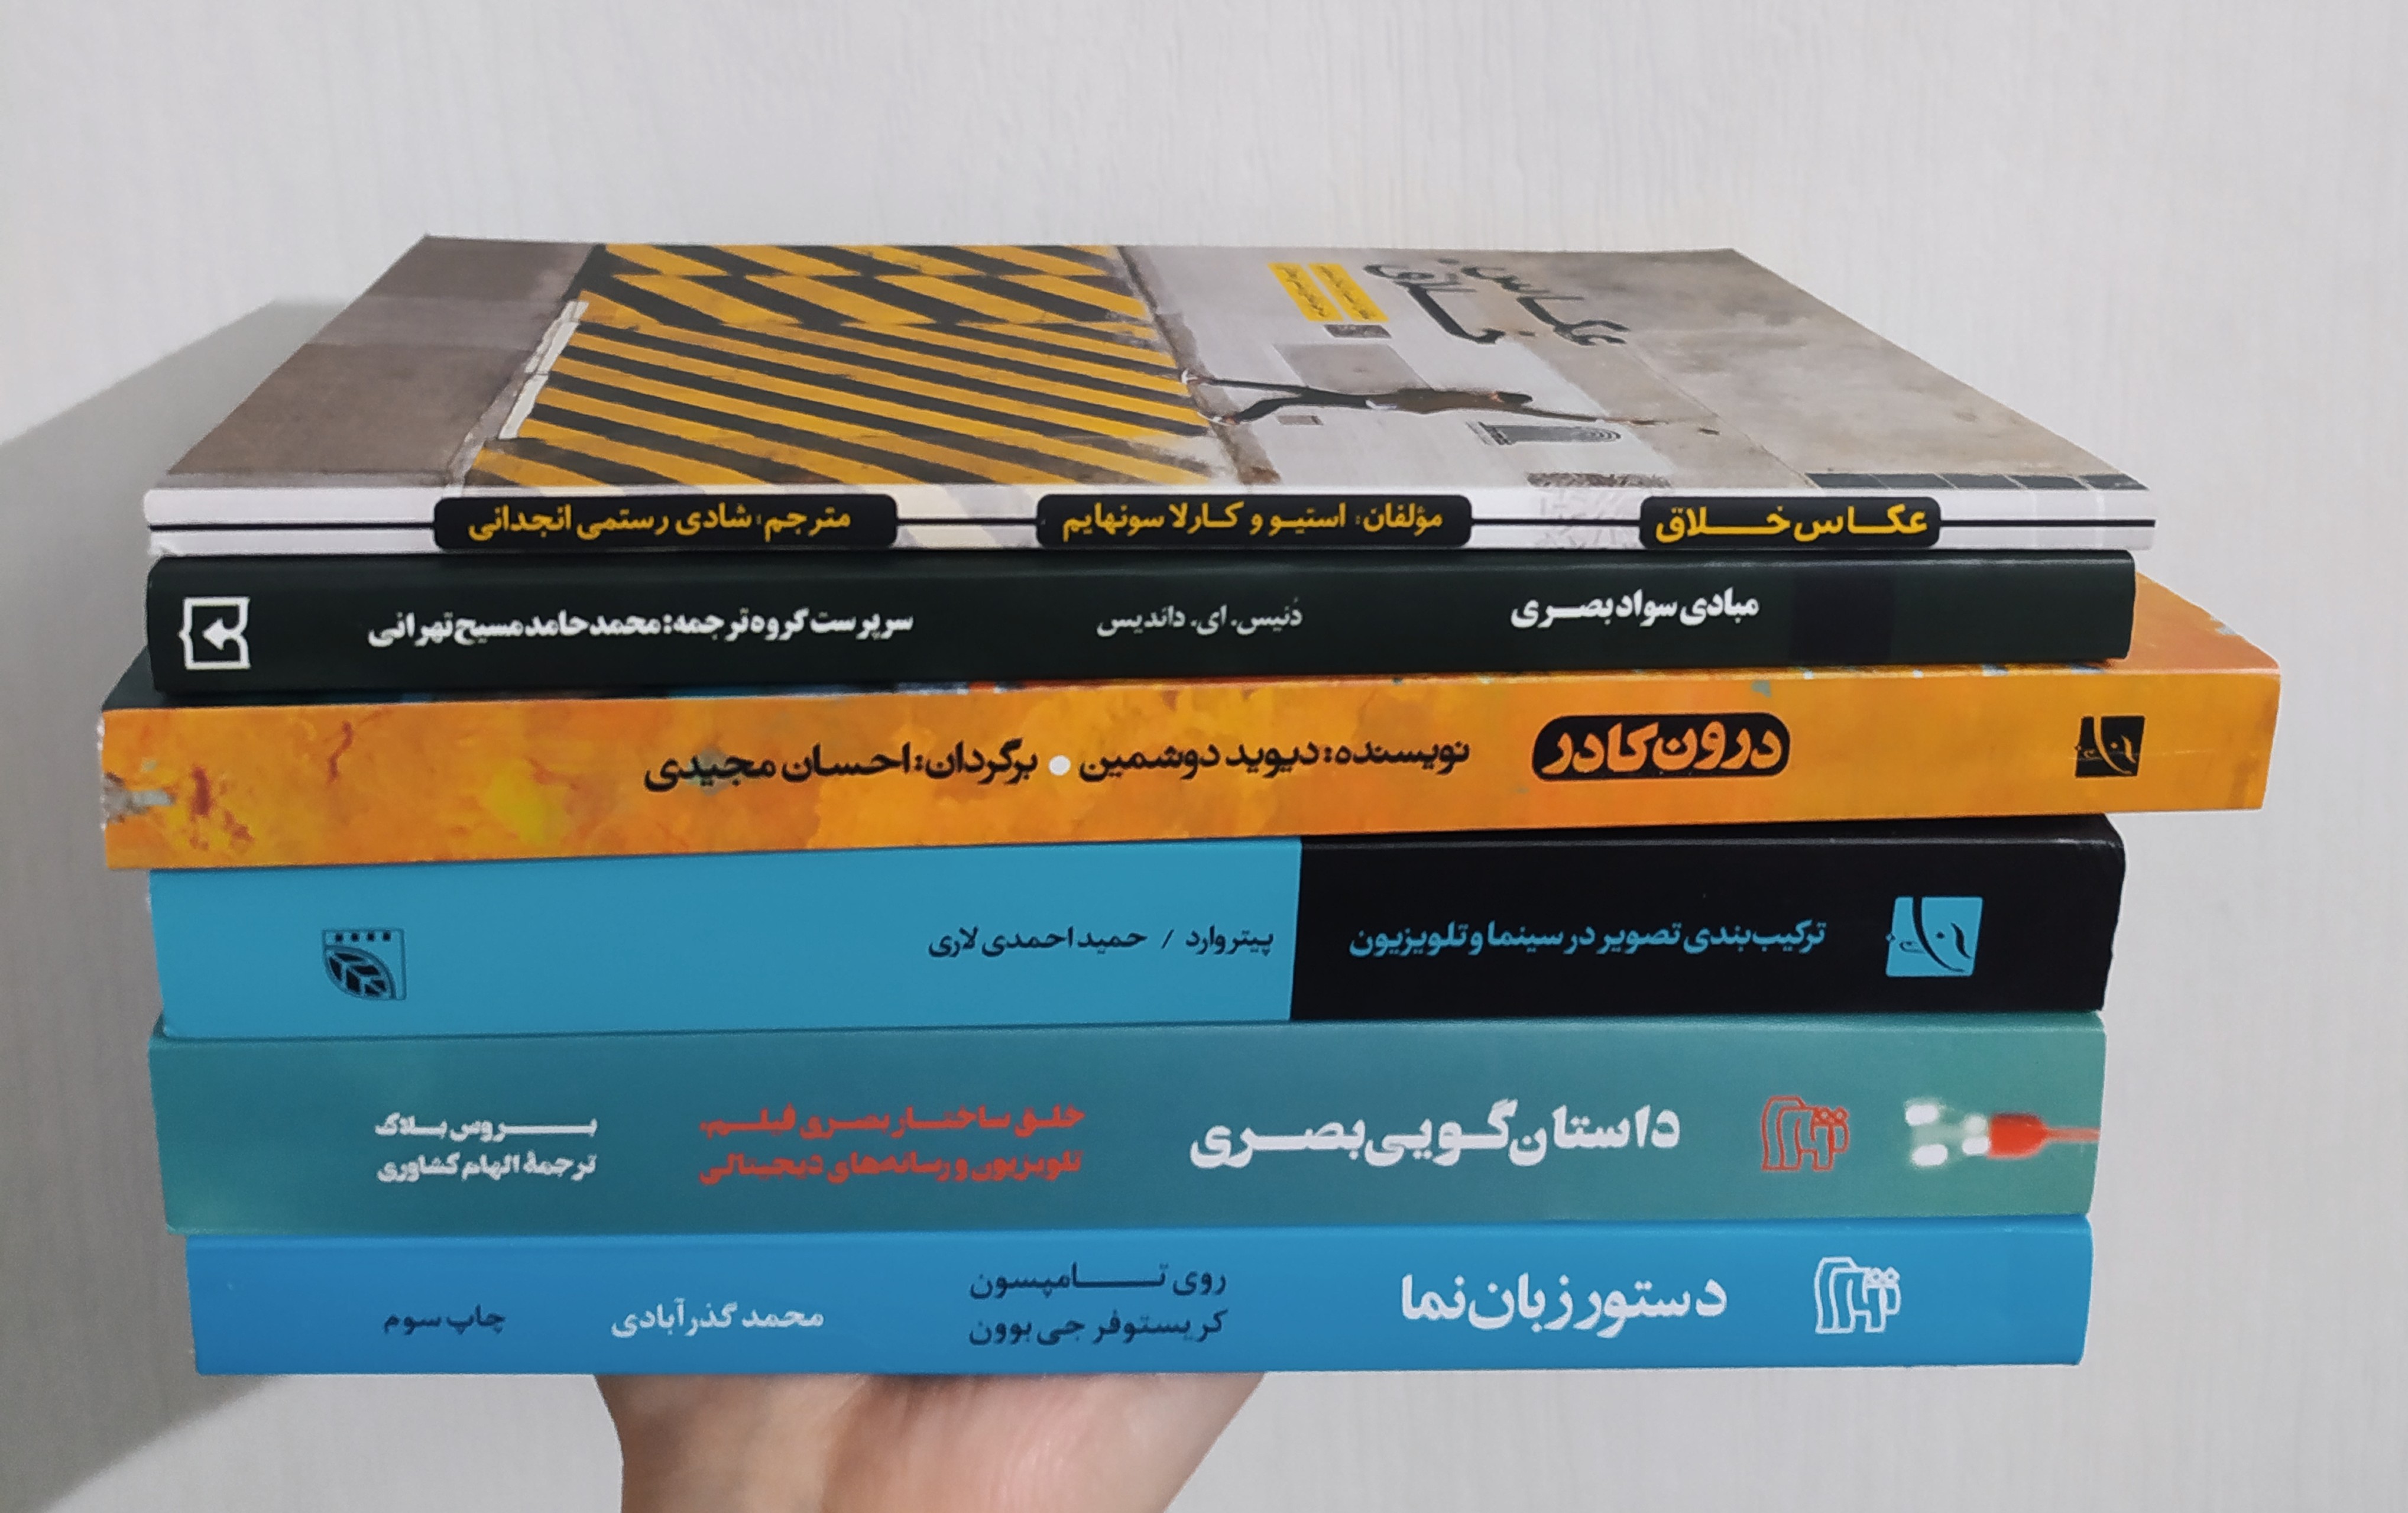 تجربه خرید از نمایشگاه مجازی کتاب تهران